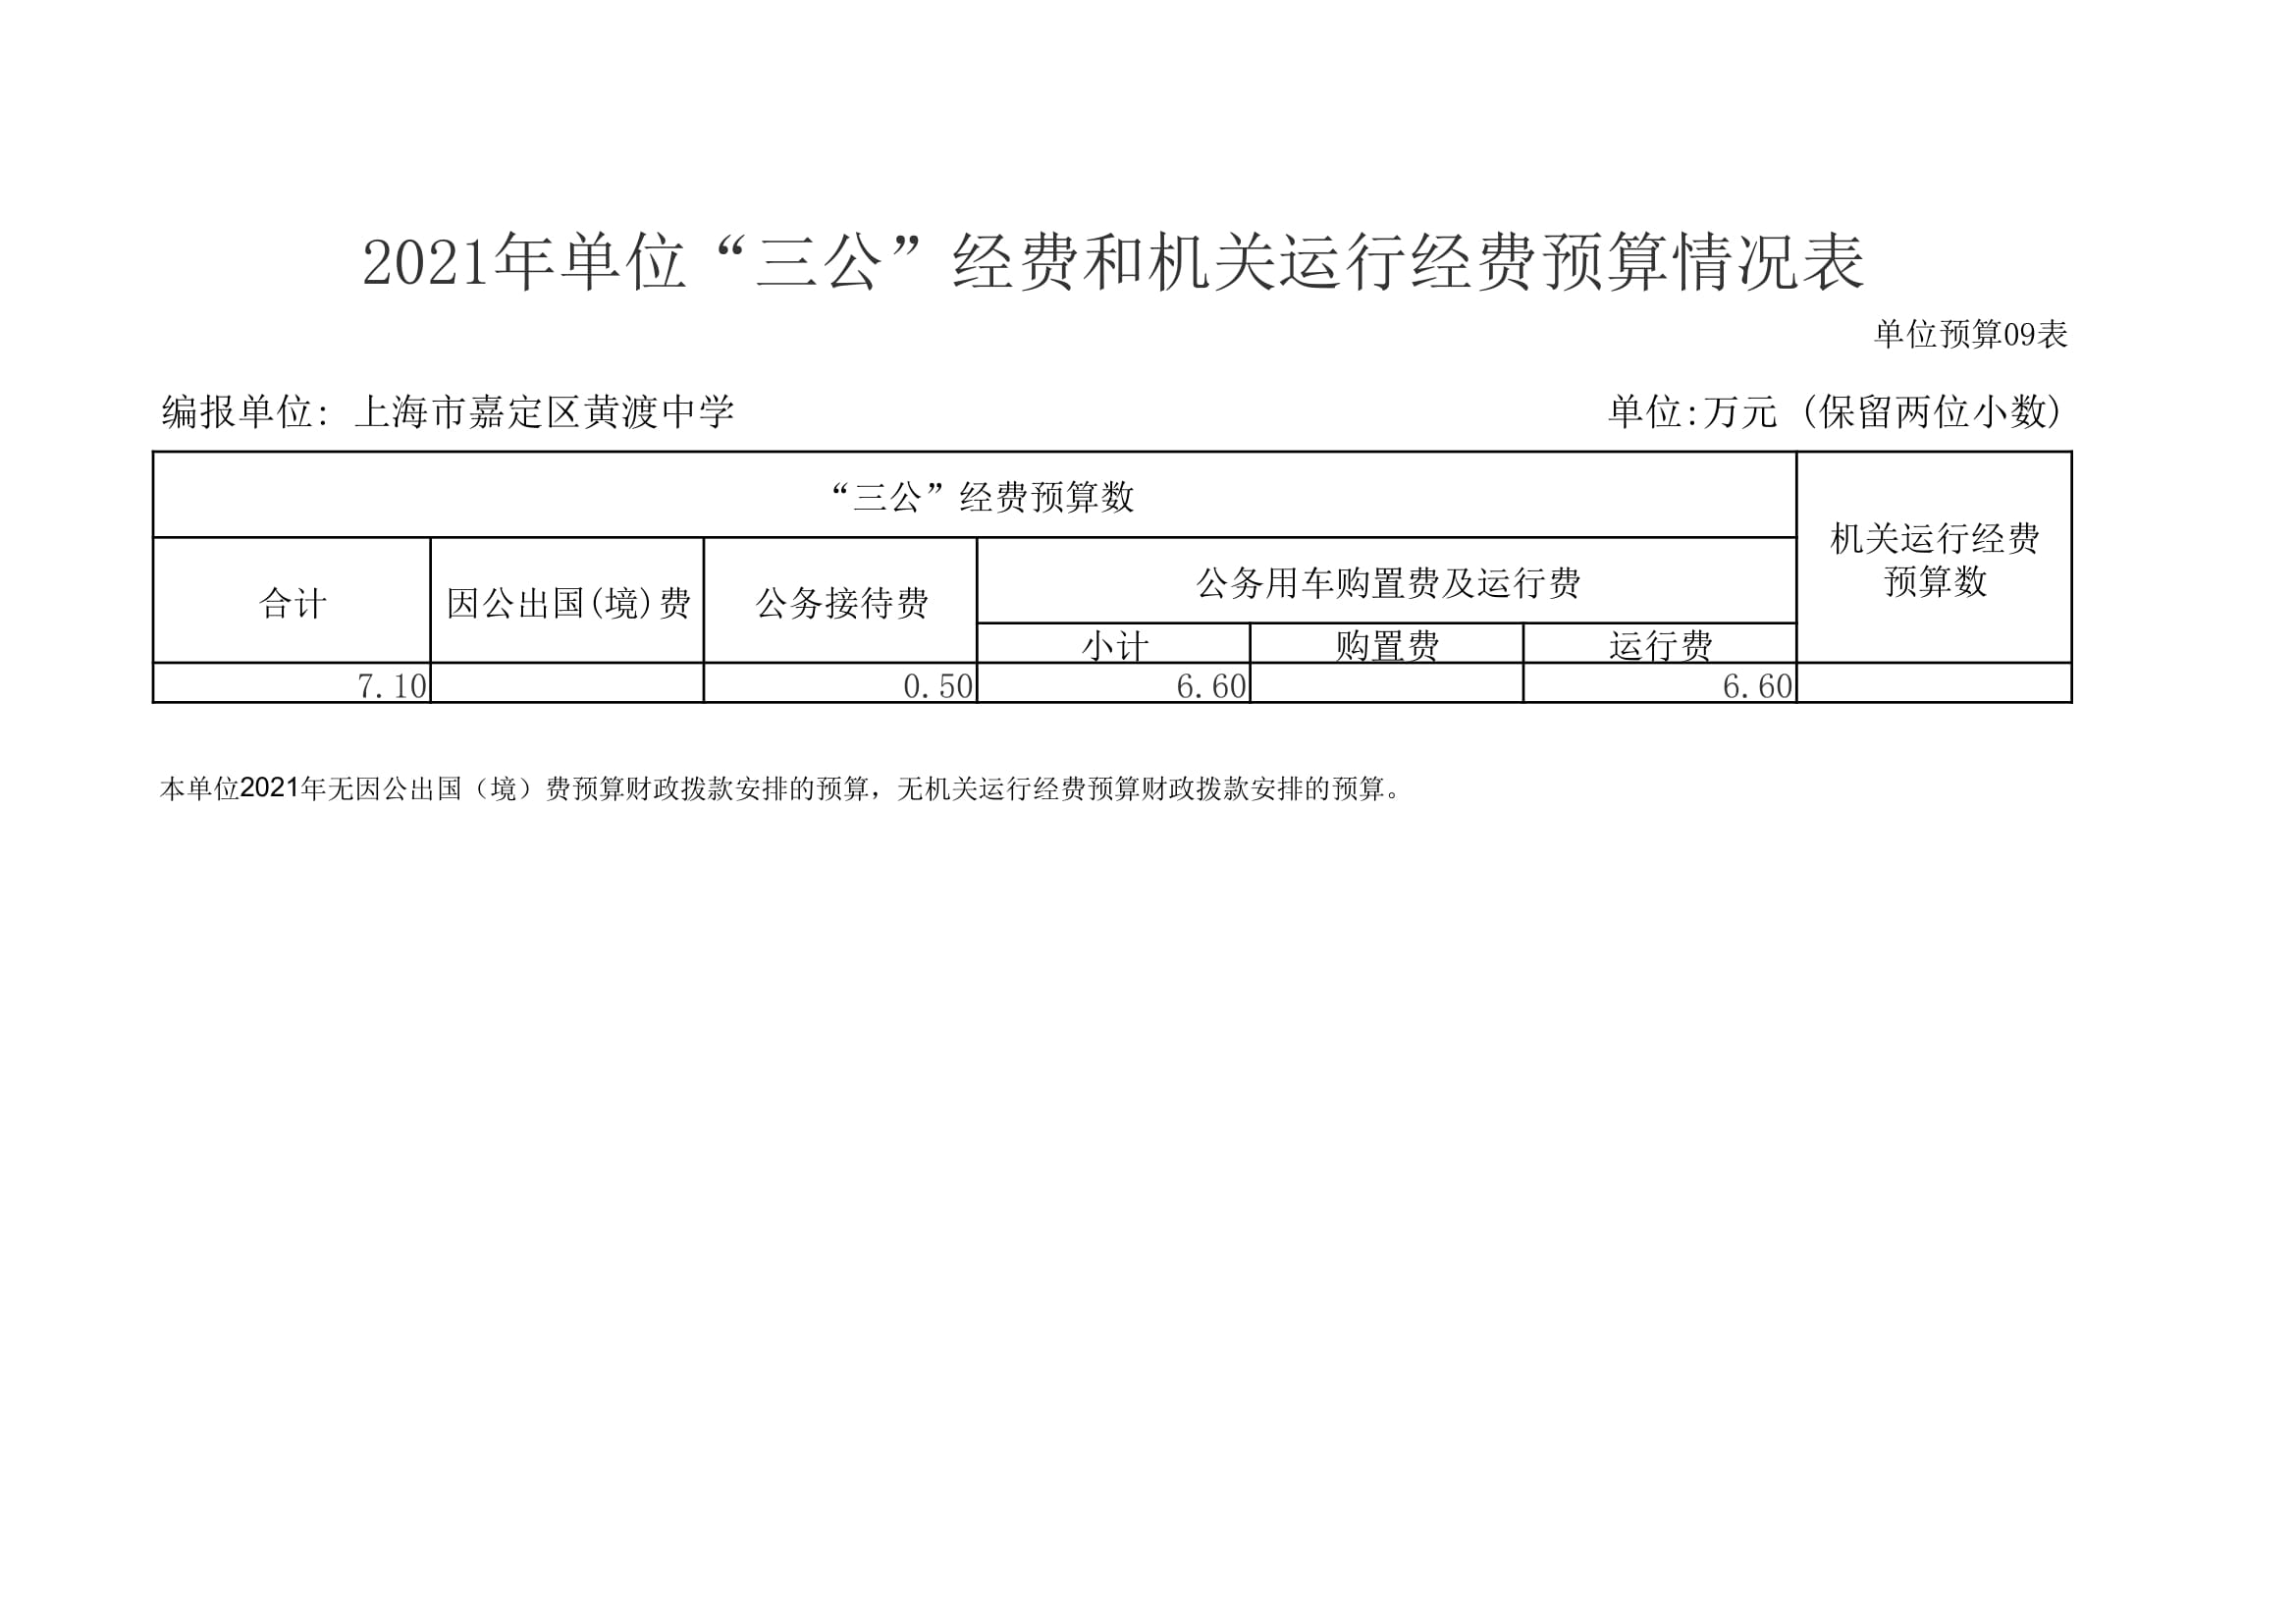 黄渡中学2021年单位支出预算表-17.jpg